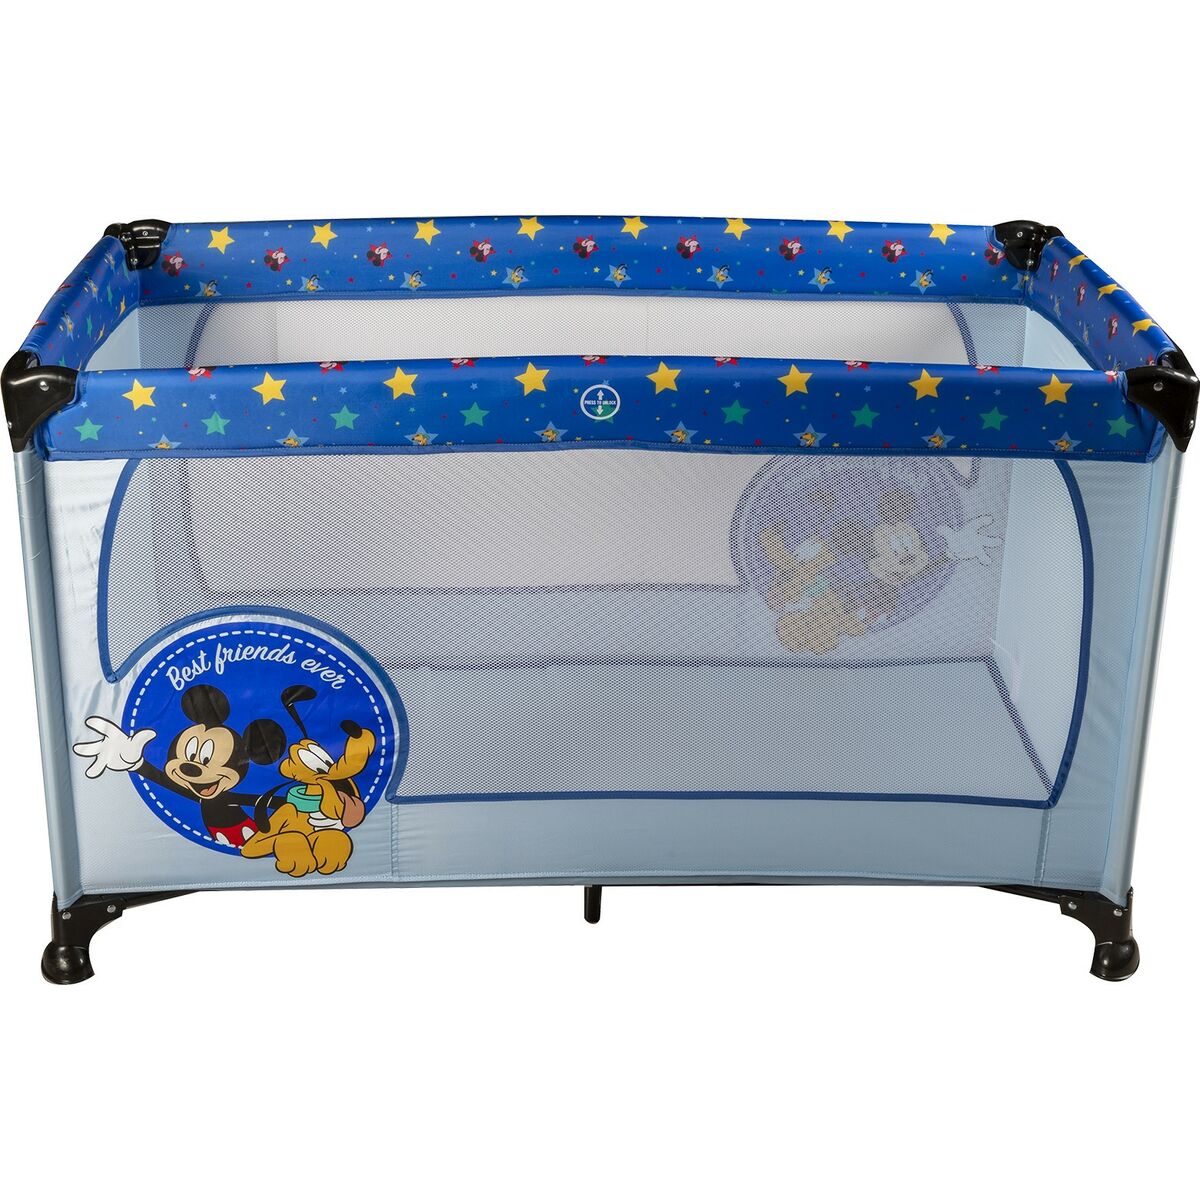 Lit Bébé De Voyage Mickey Mouse Cz10607 120 X 65 X 76 Cm Bleu